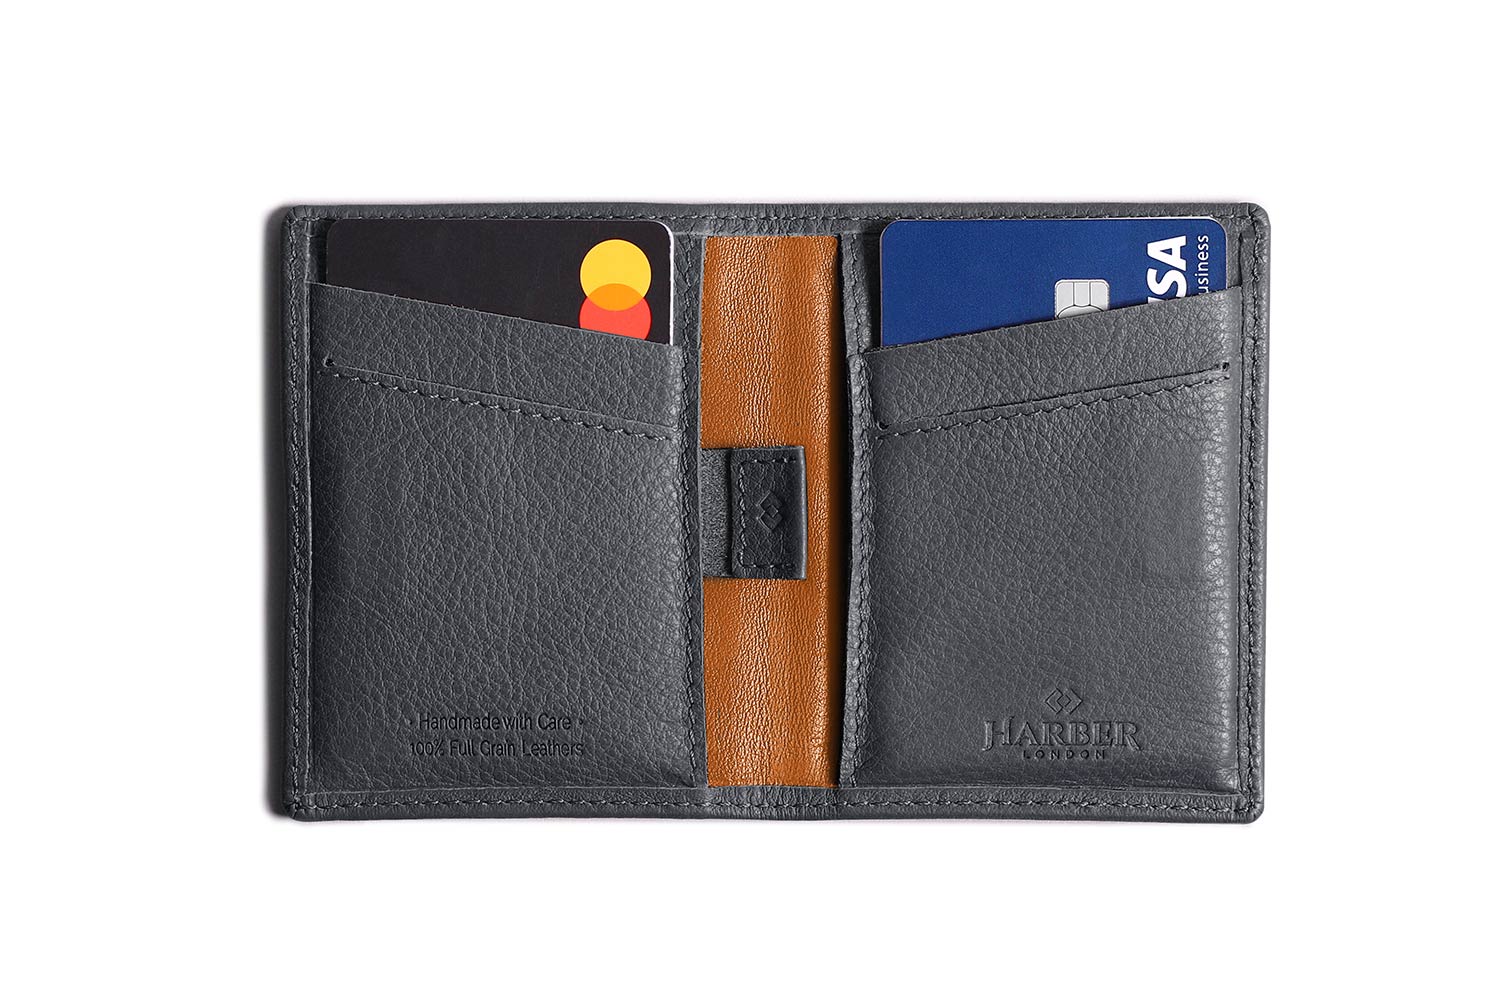 Gewend aan investering paar Card Wallet RFID Protected | Harber London